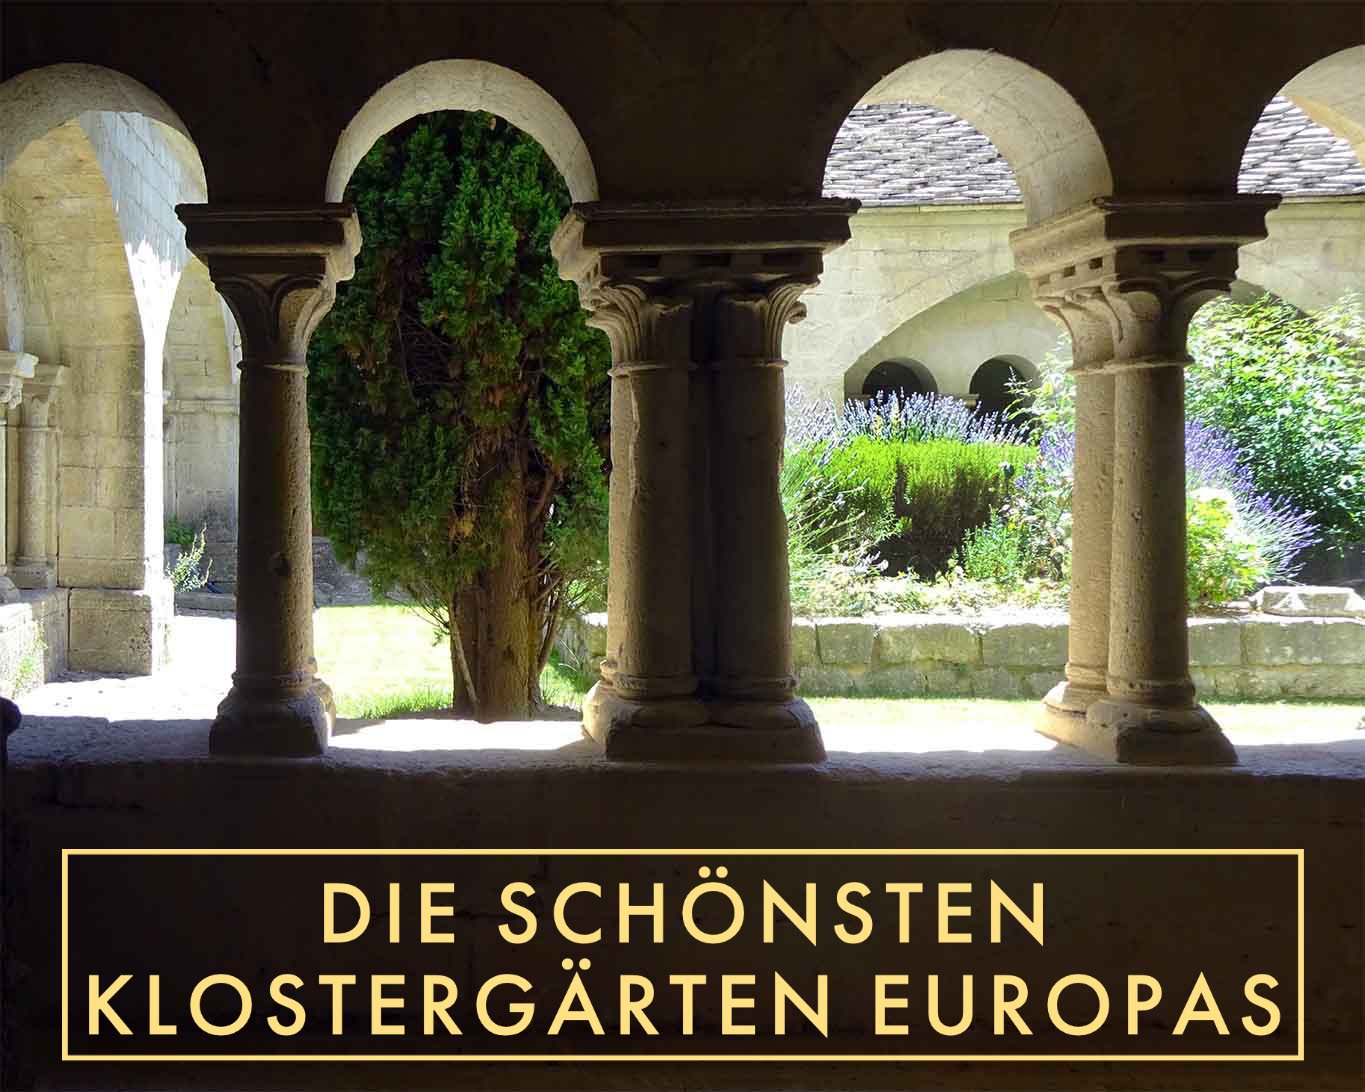 Besuchen Sie die schönsten Klostergärten Europas. Endecken Sie Neues und Altbekanntes. Ein Ausflug in die verschlossene Welten der Klöster Frankreichs, Belgien, der Schweiz, Italien, Österreich und Deutschland.